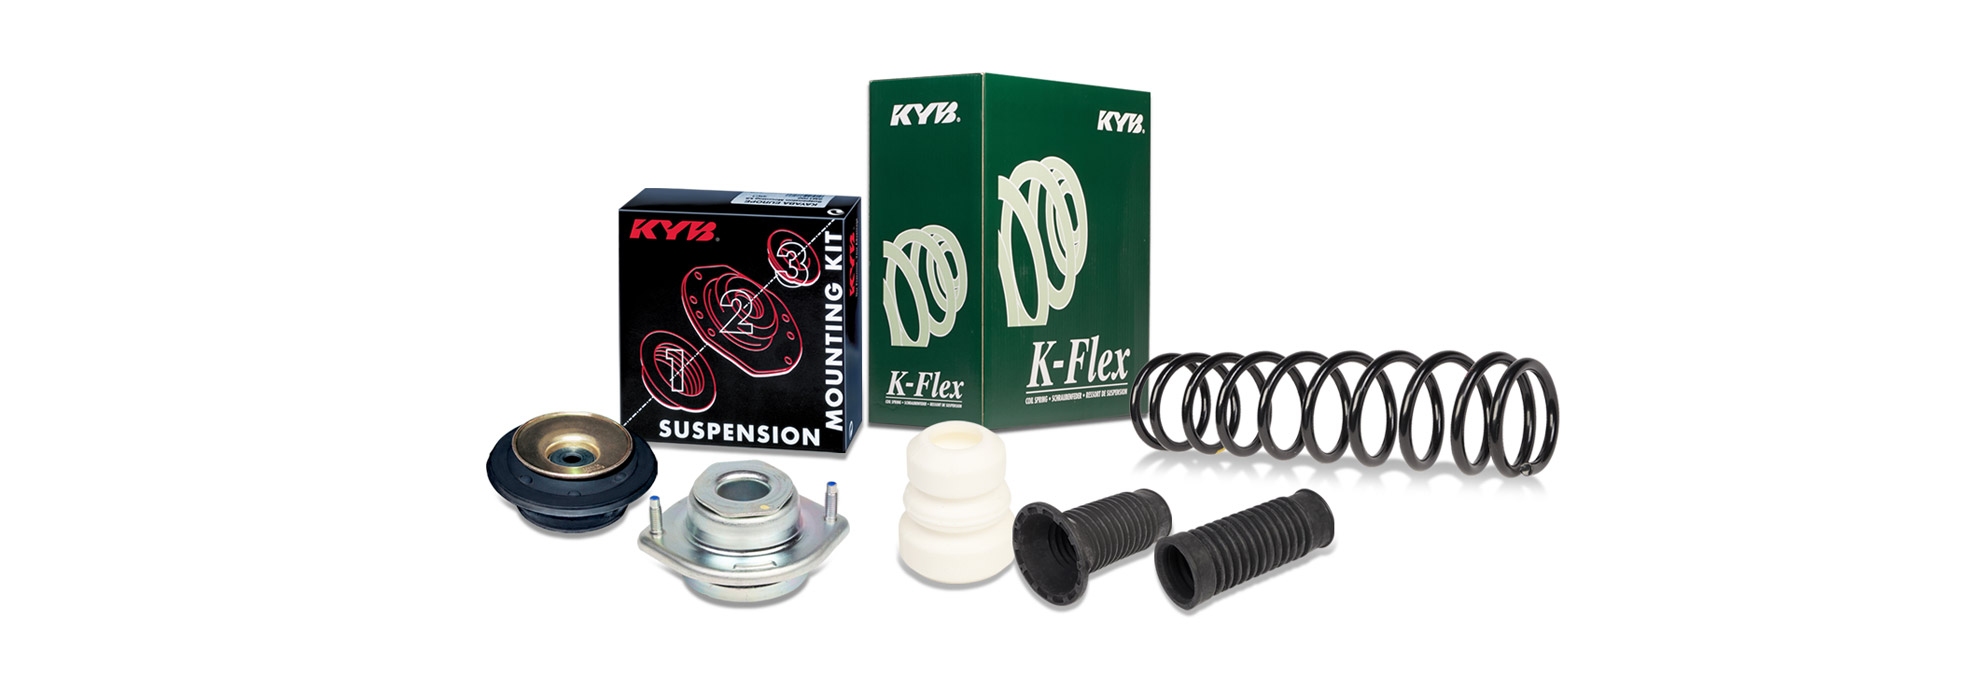 Ressort de suspension K-Flex Kayaba KYB rx6763